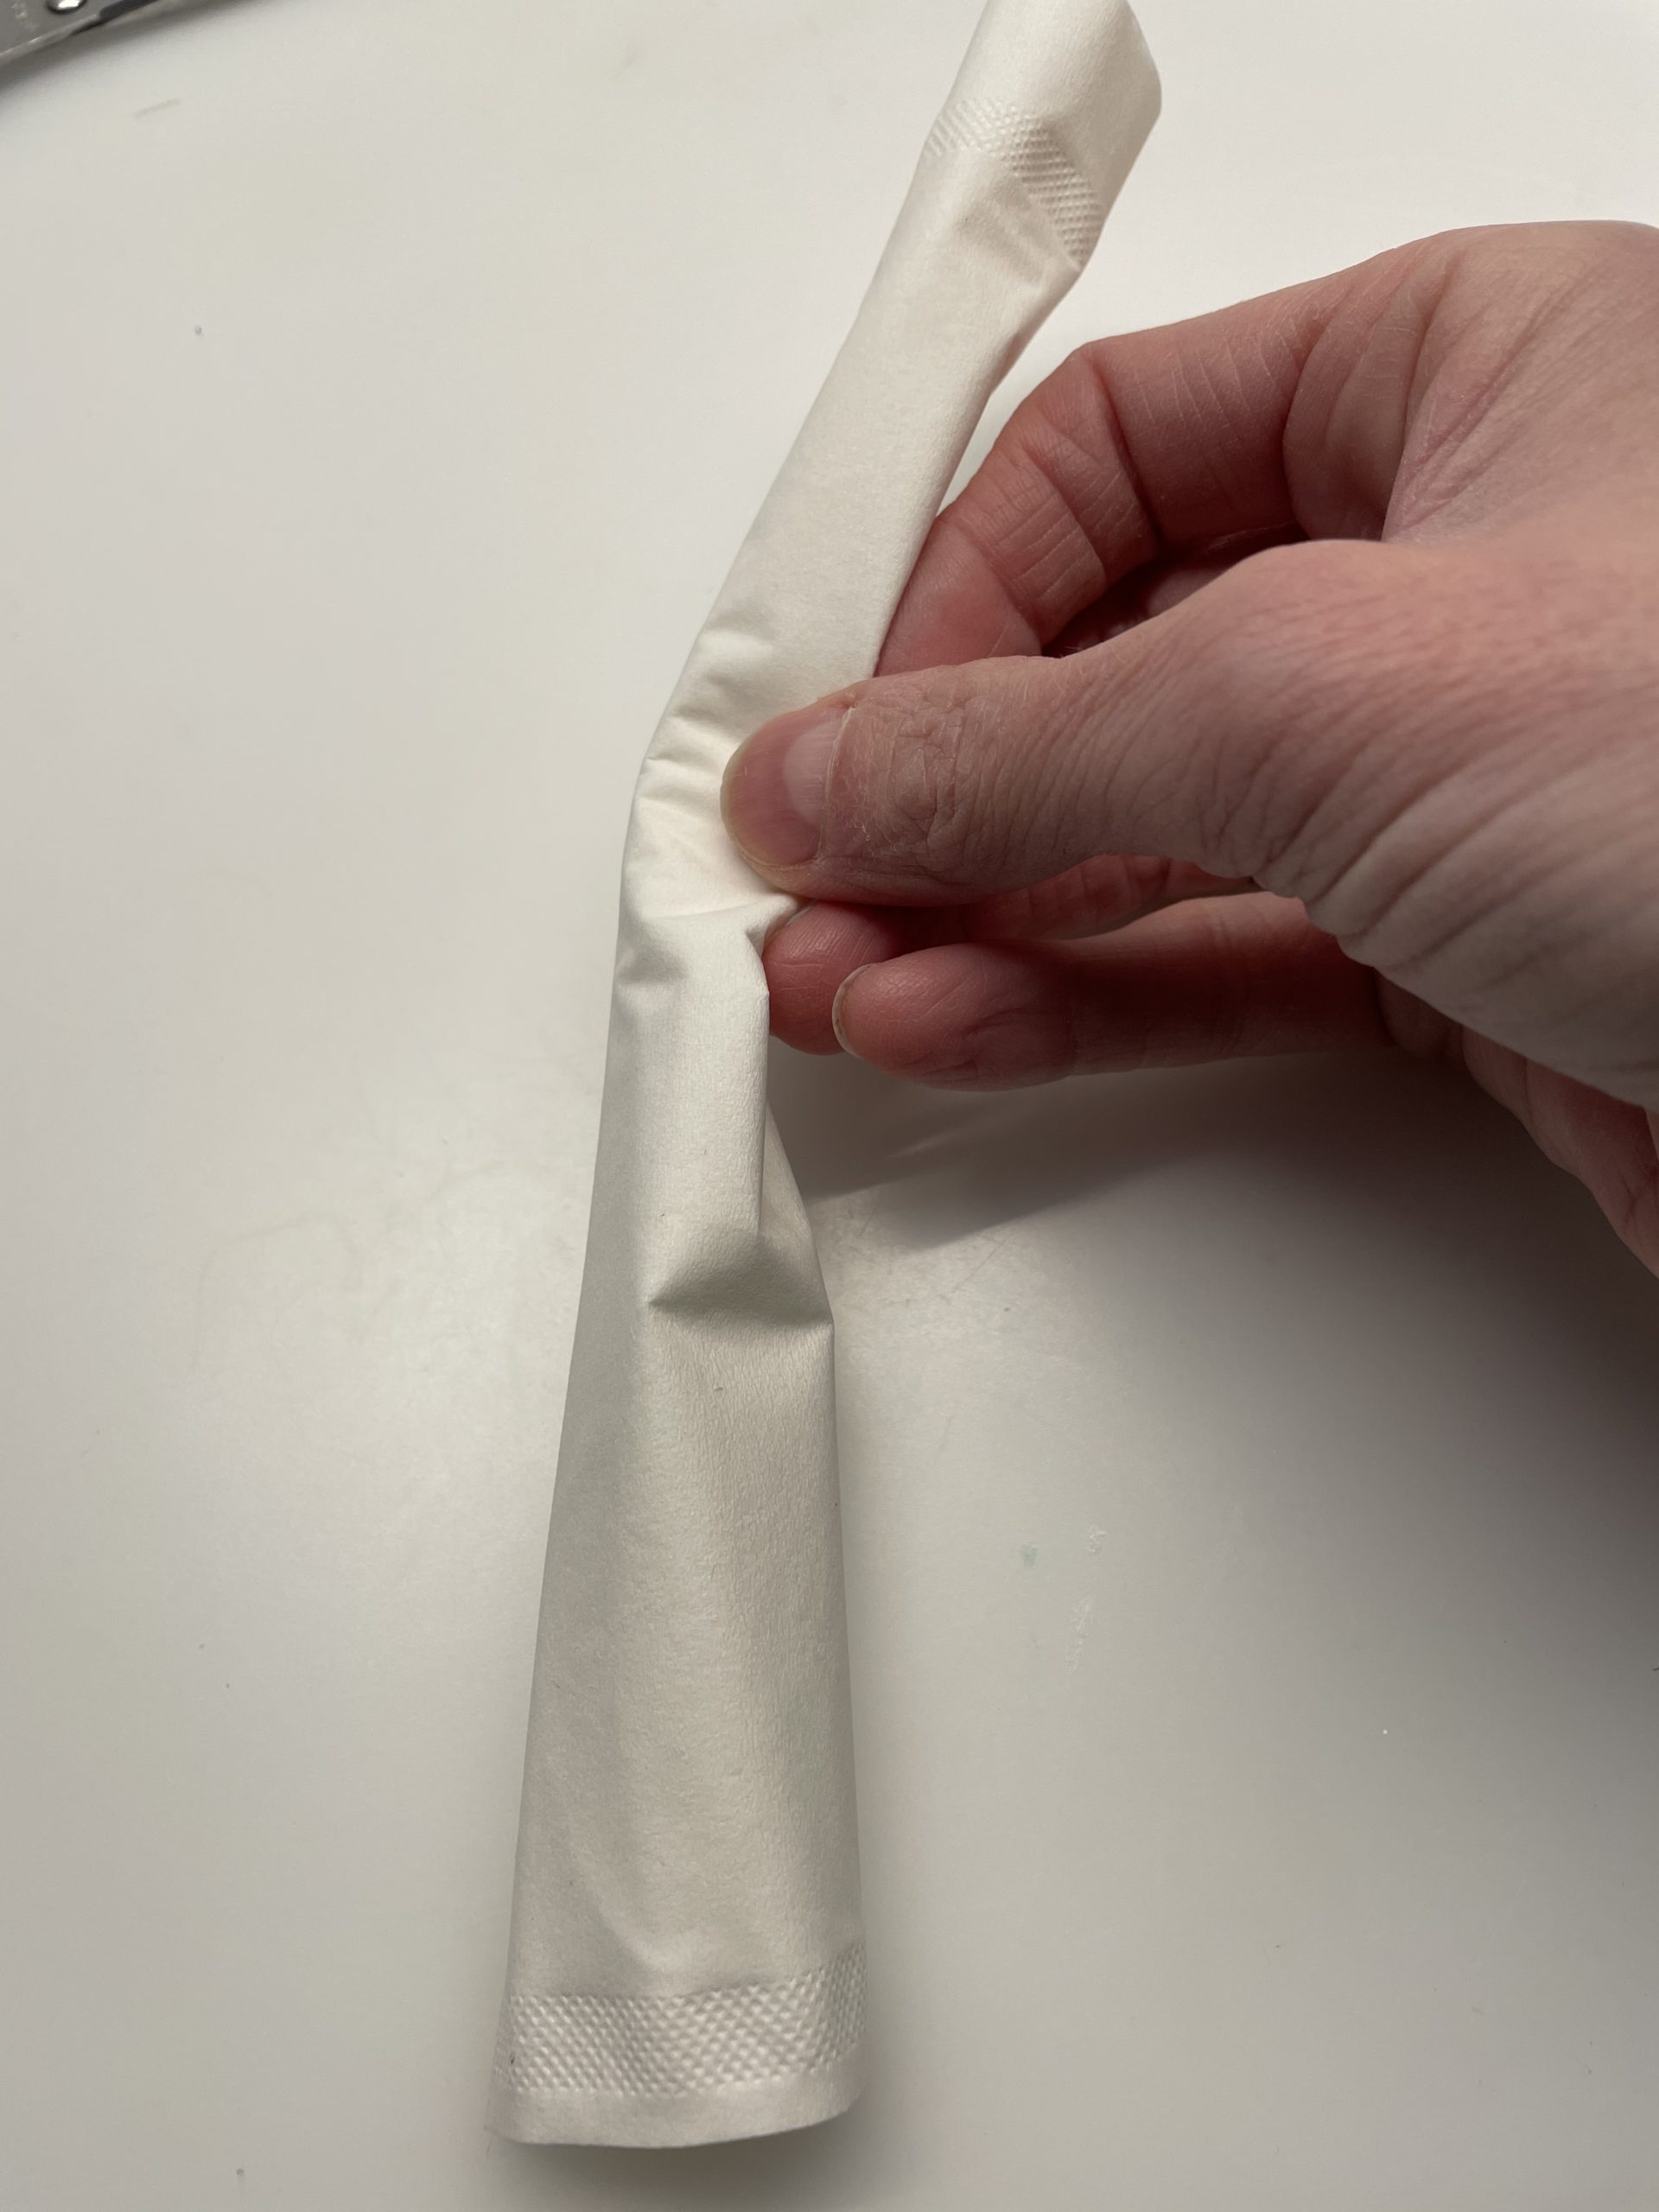 Bild zum Schritt 13 für die Kinder-Beschäftigung: 'Rollt das Taschentuch von der langen Seite ausgehend zusammen.'